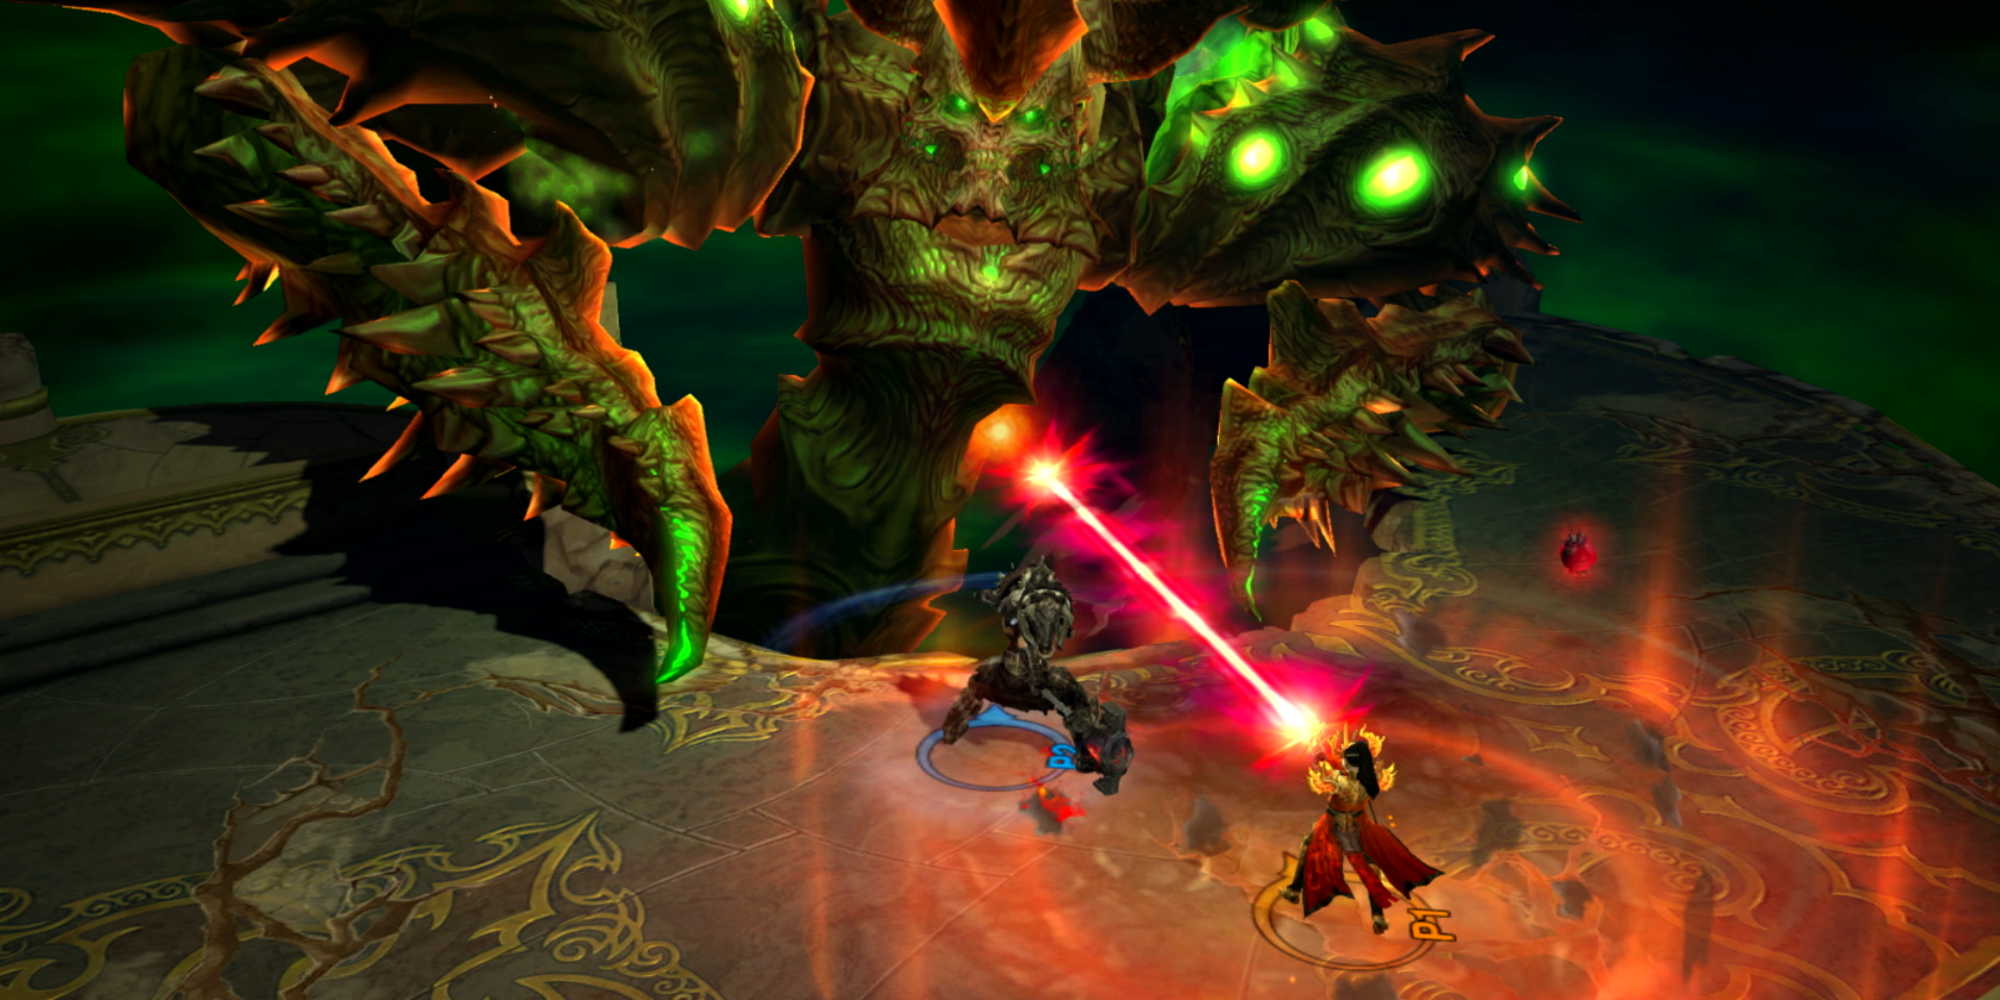 A fight scene erupts in Diablo III